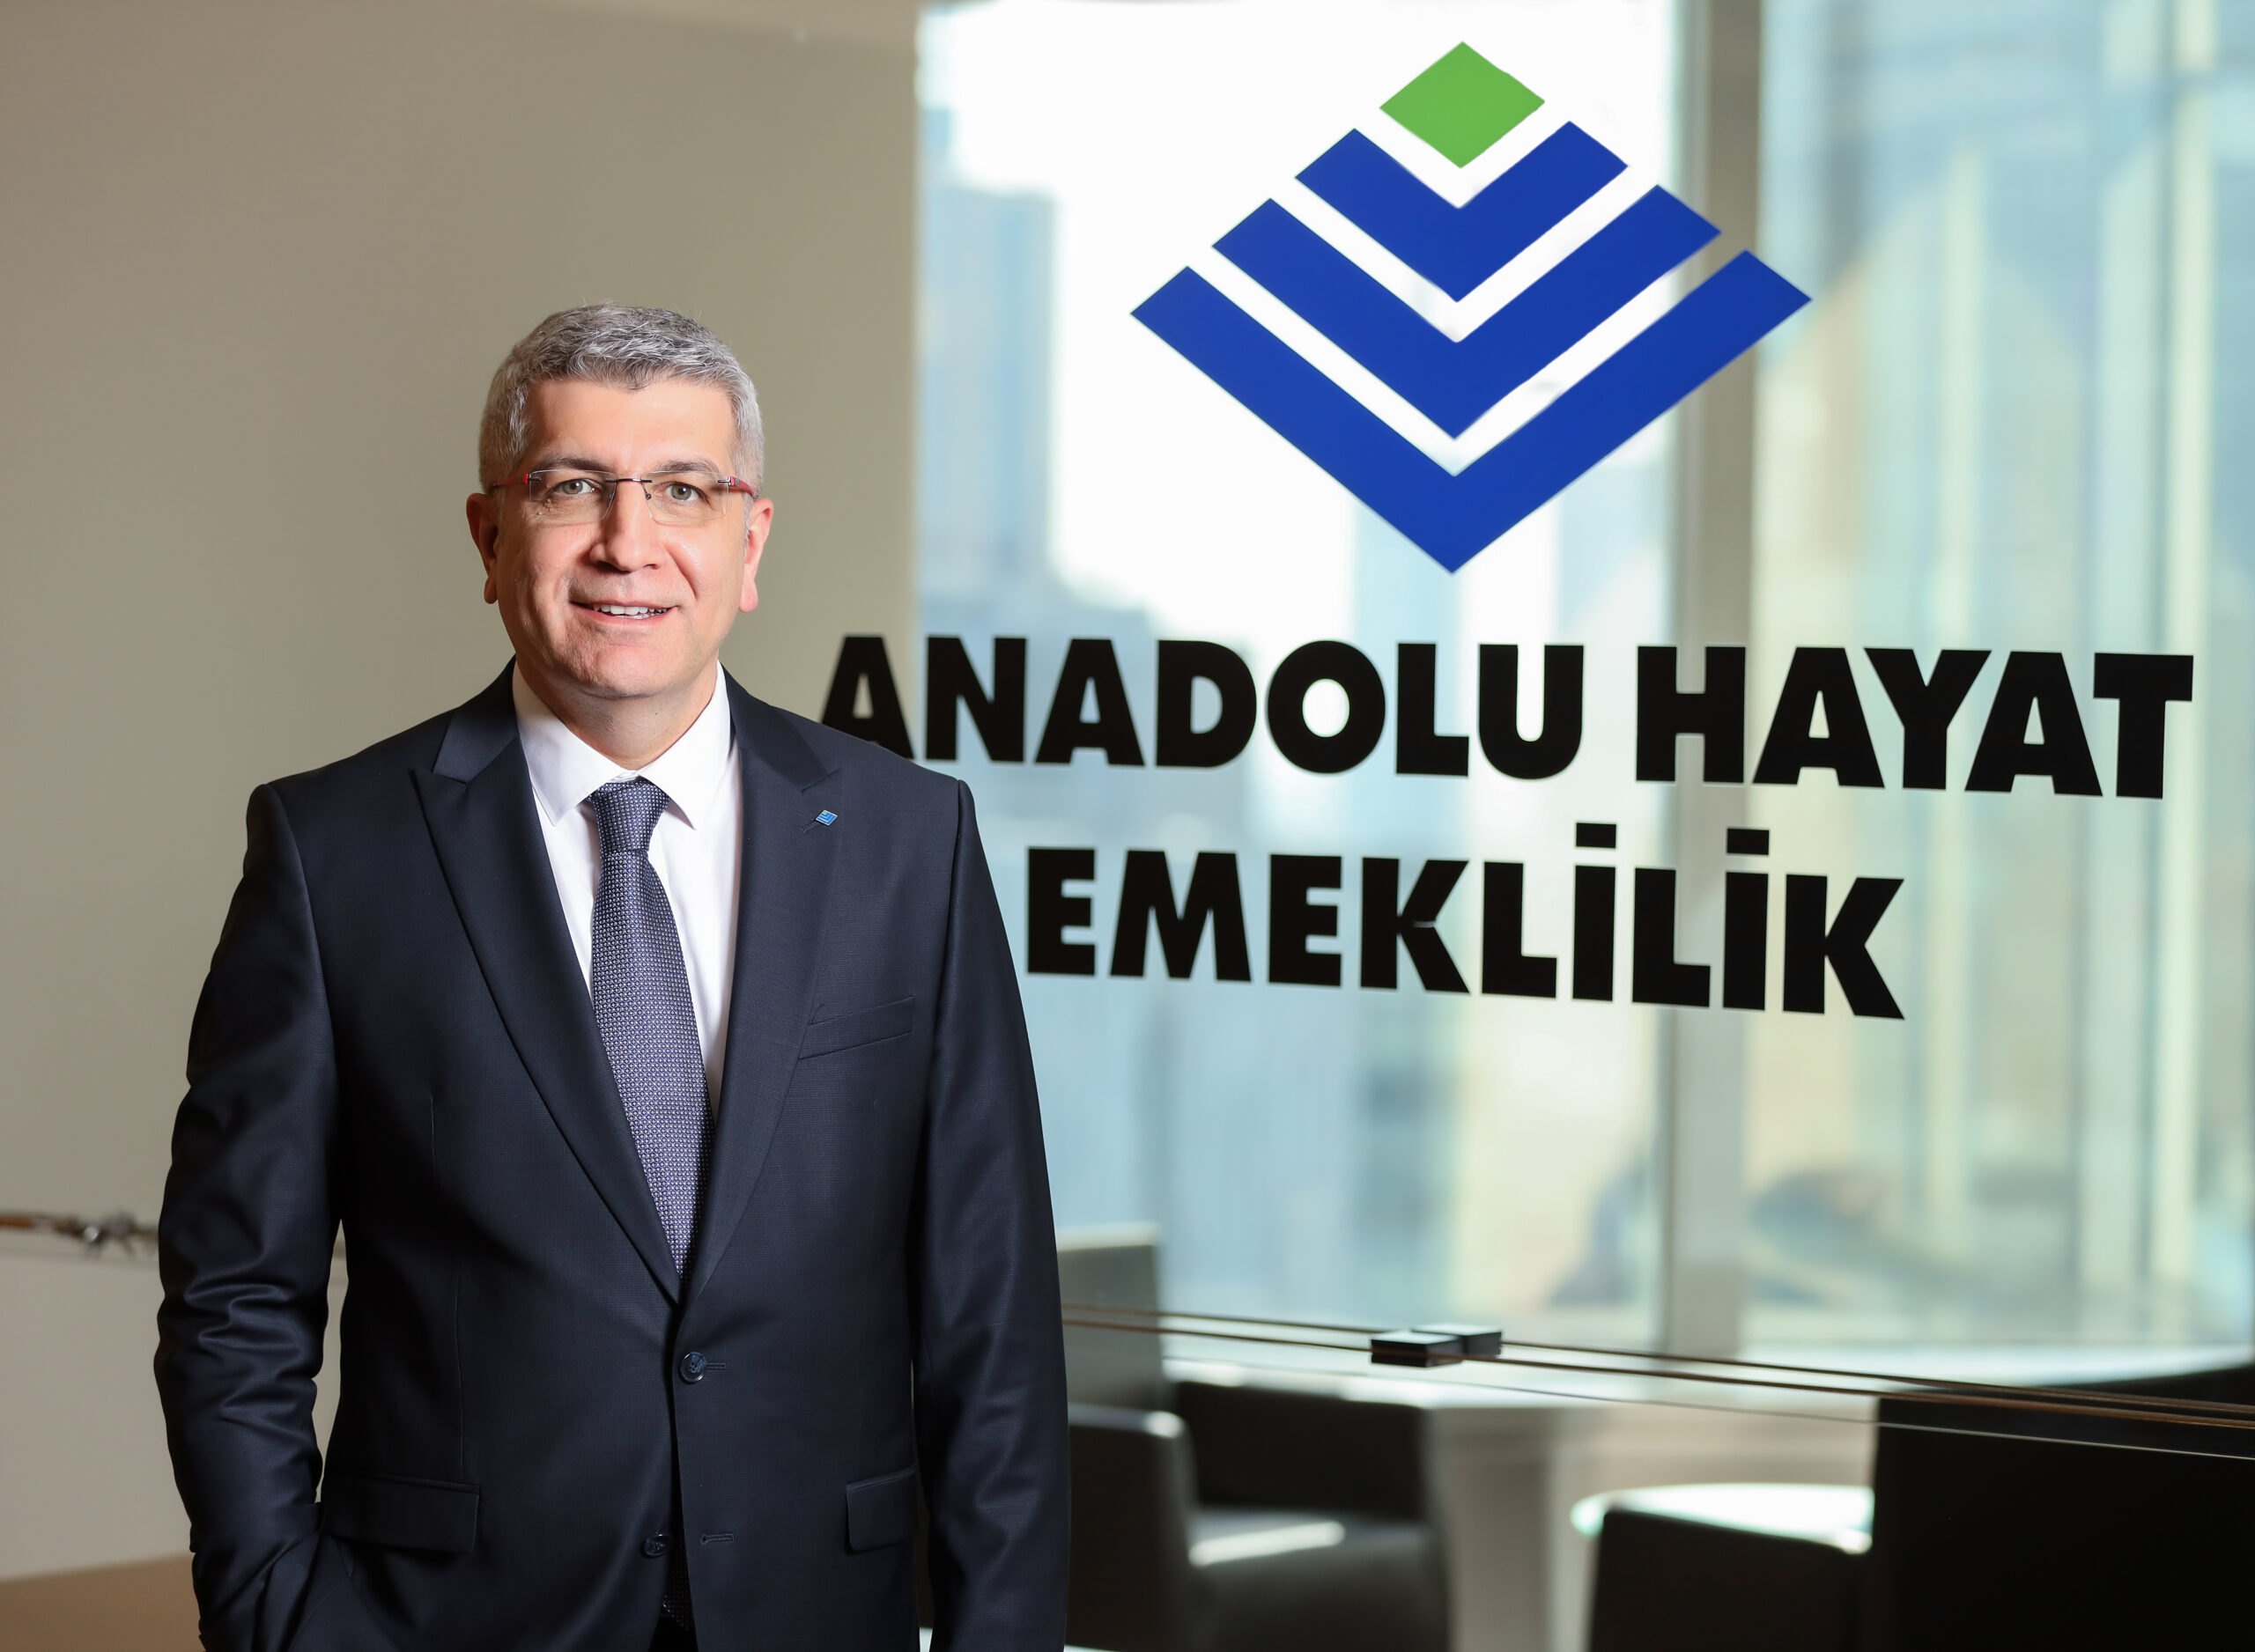 Anadolu Hayat Emeklilik’in Aktif Büyüklüğü 162 Milyar TL’yi Aştı